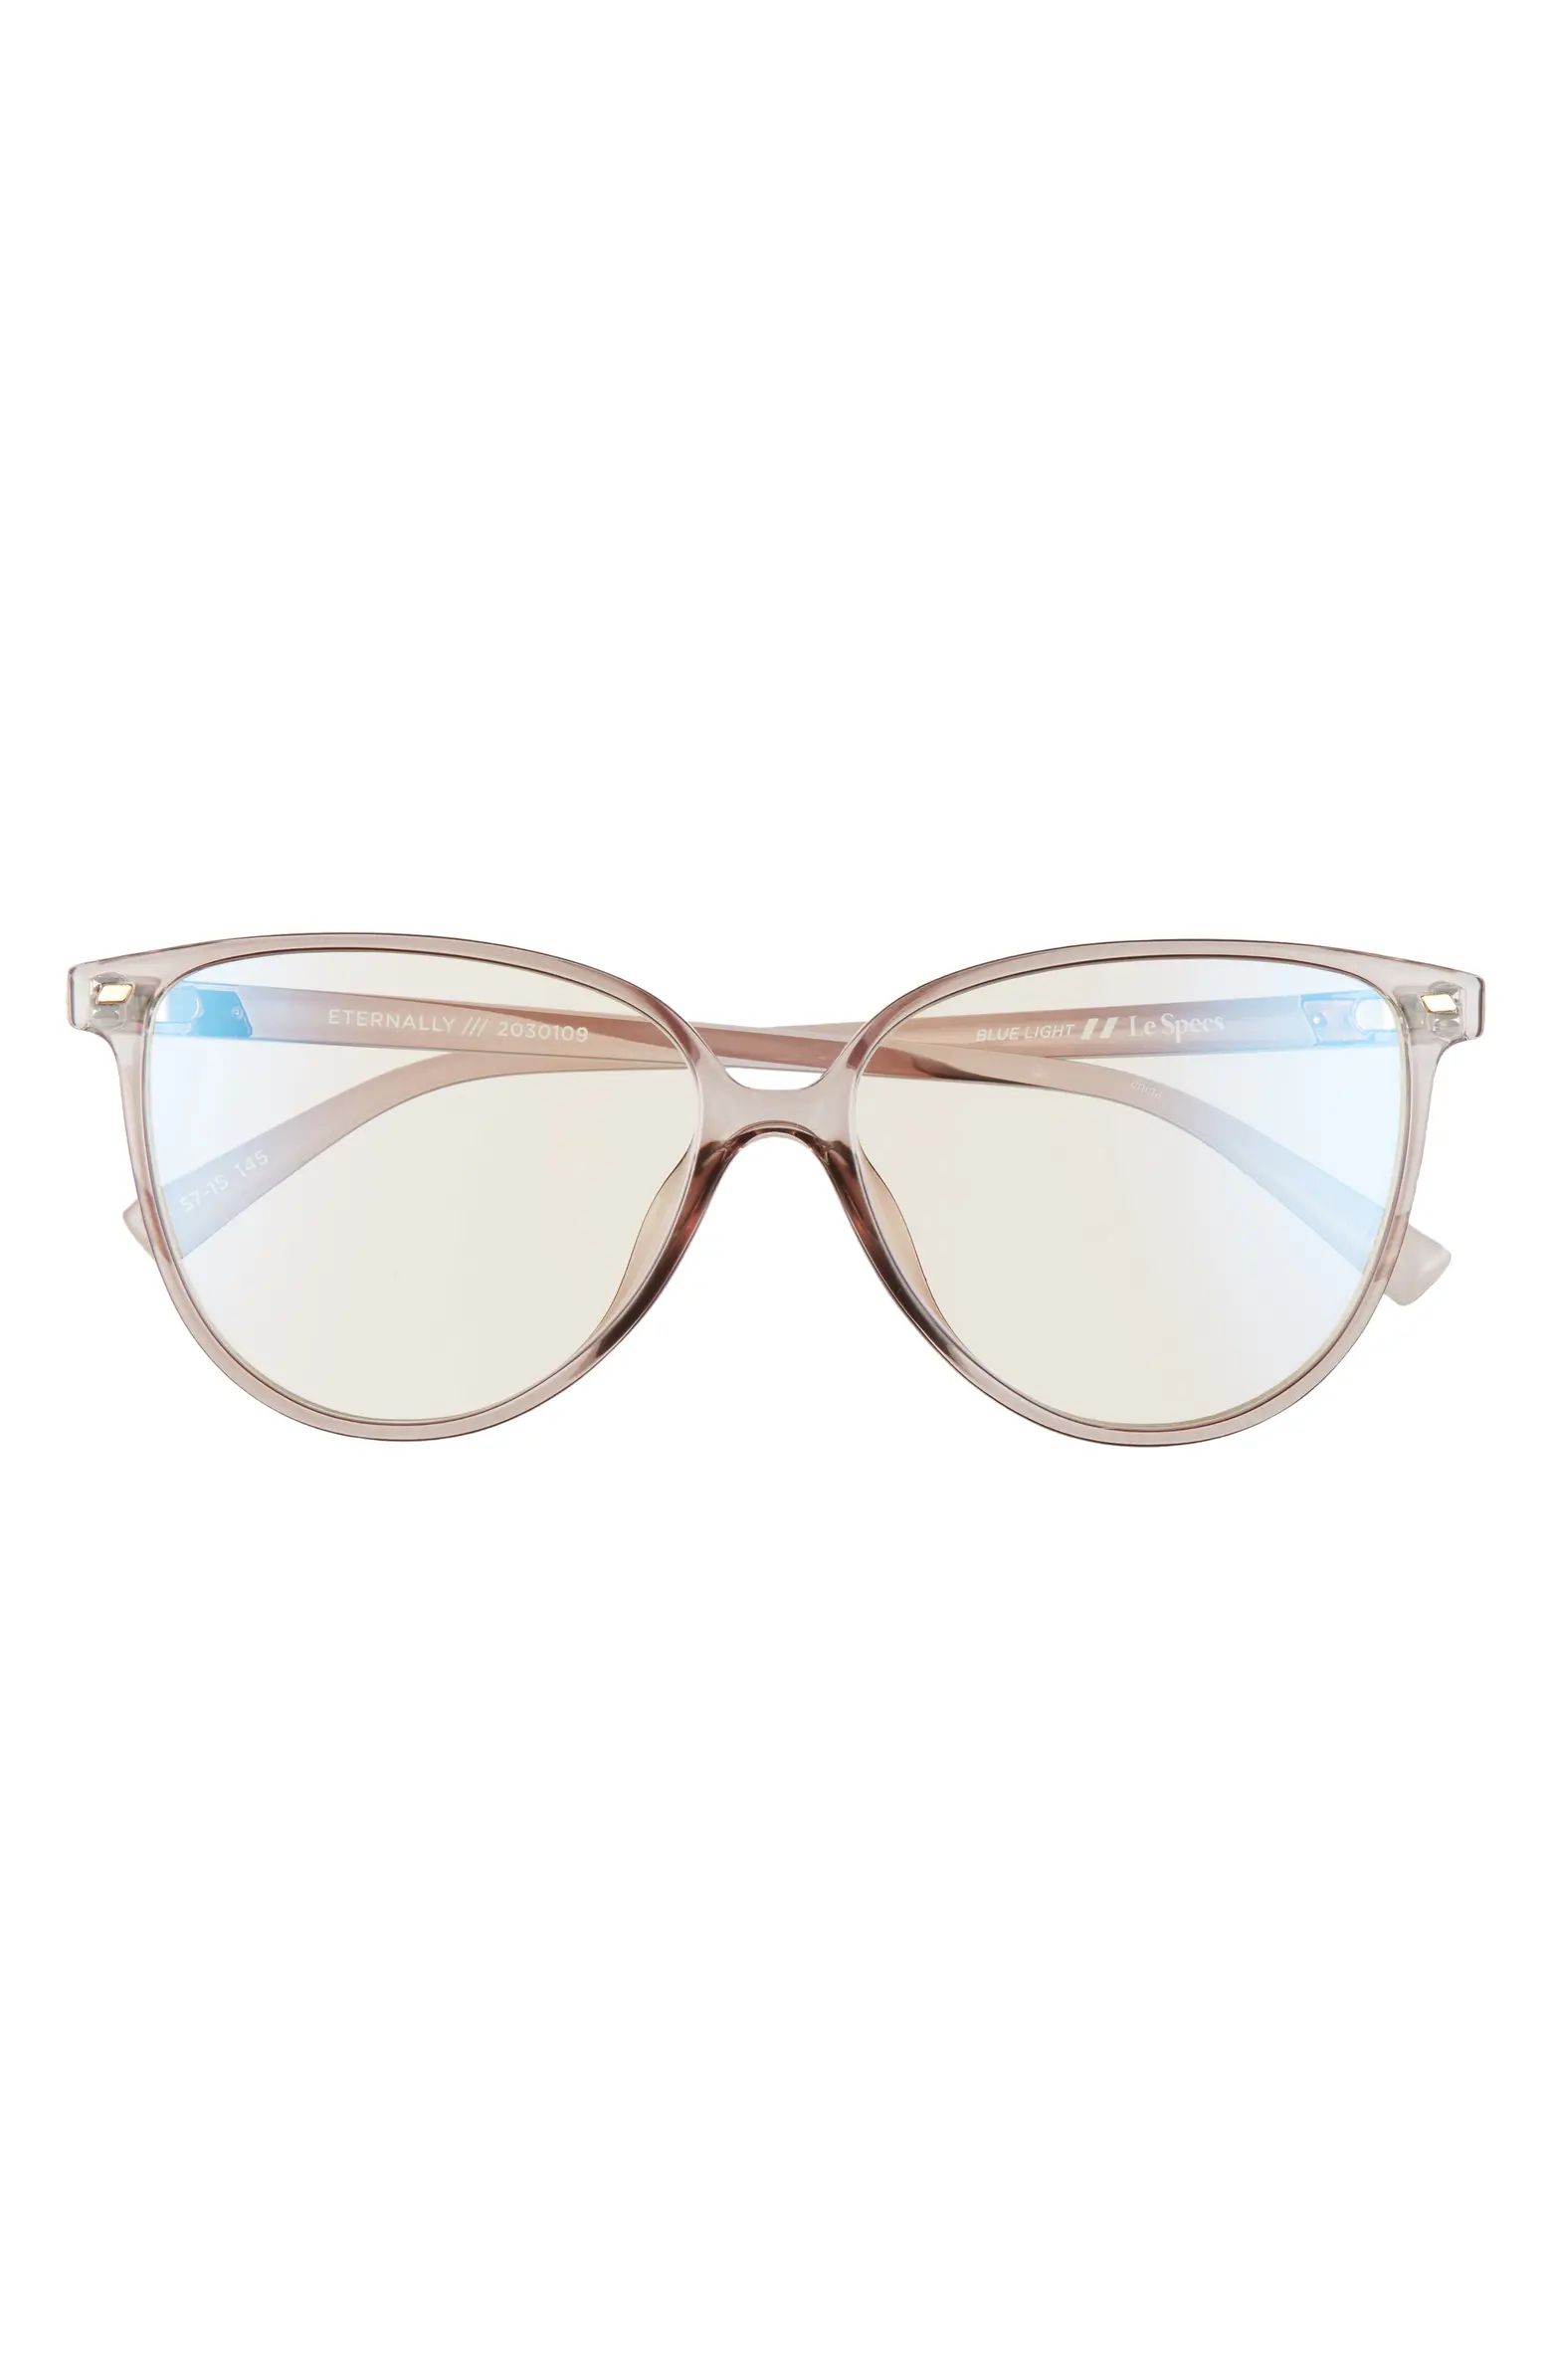 Le Specs Eternally 57mm Blue Light Blocking Glasses | Nordstrom | Nordstrom